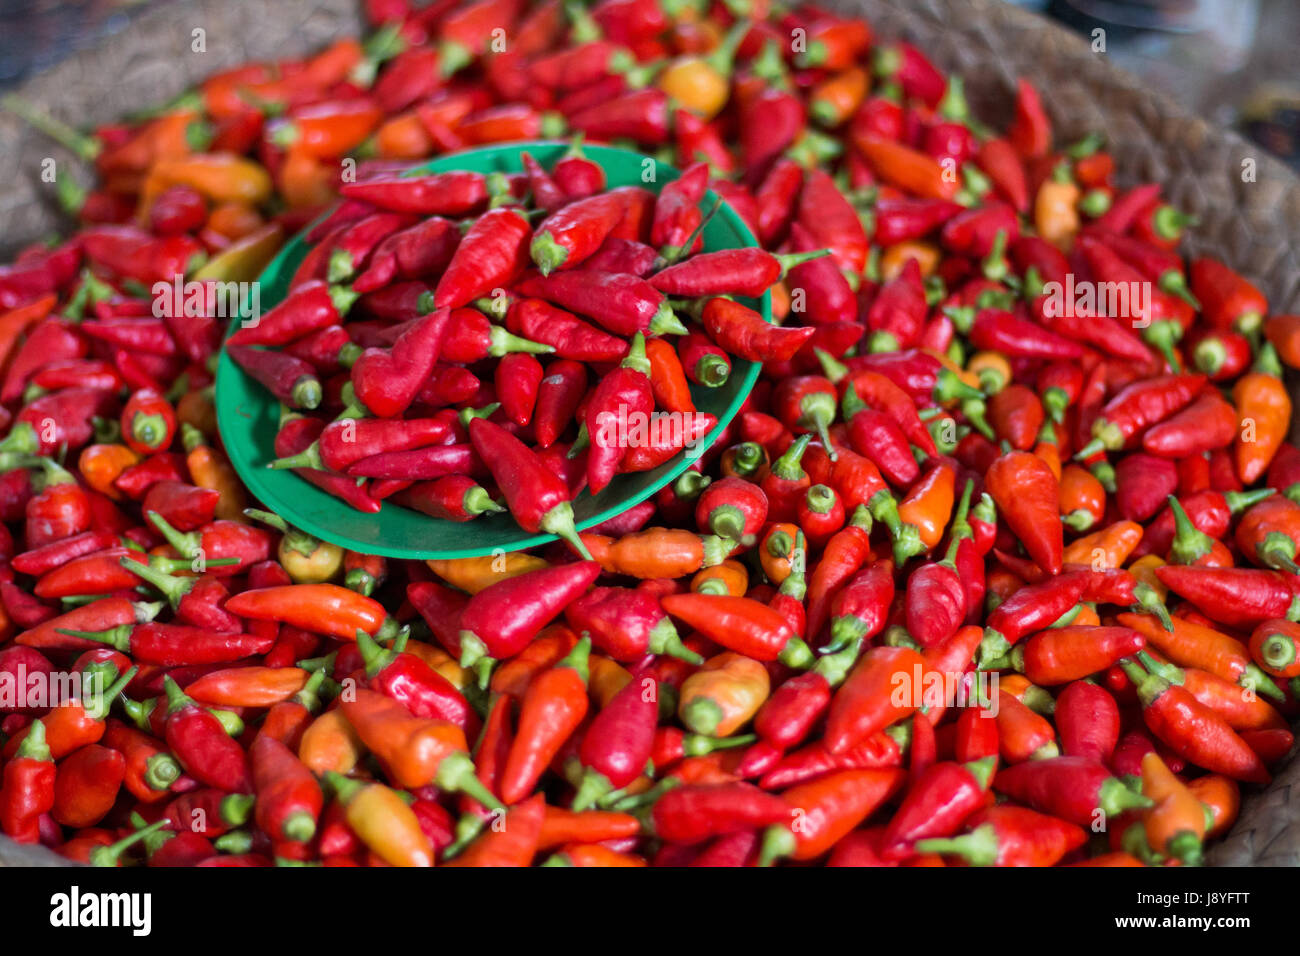 Chili Peppers in Suai Bezirk Markt, Díli, Timor-Leste Stockfoto